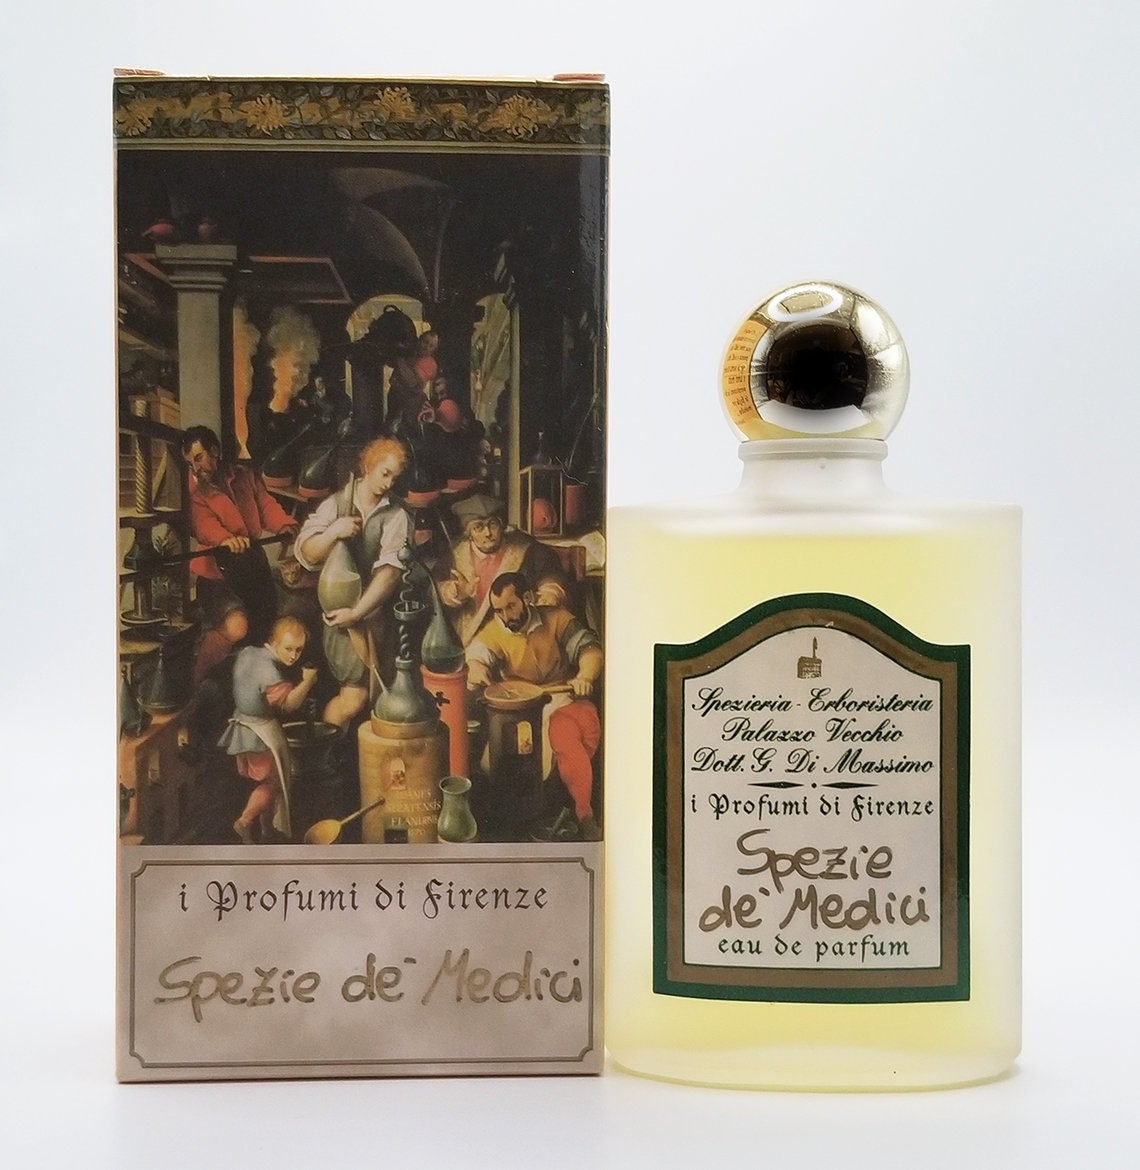 Bleu De CHANEL Eau De Parfum Pour Homme Men’s Spray Sample - Size 1.5 ML 